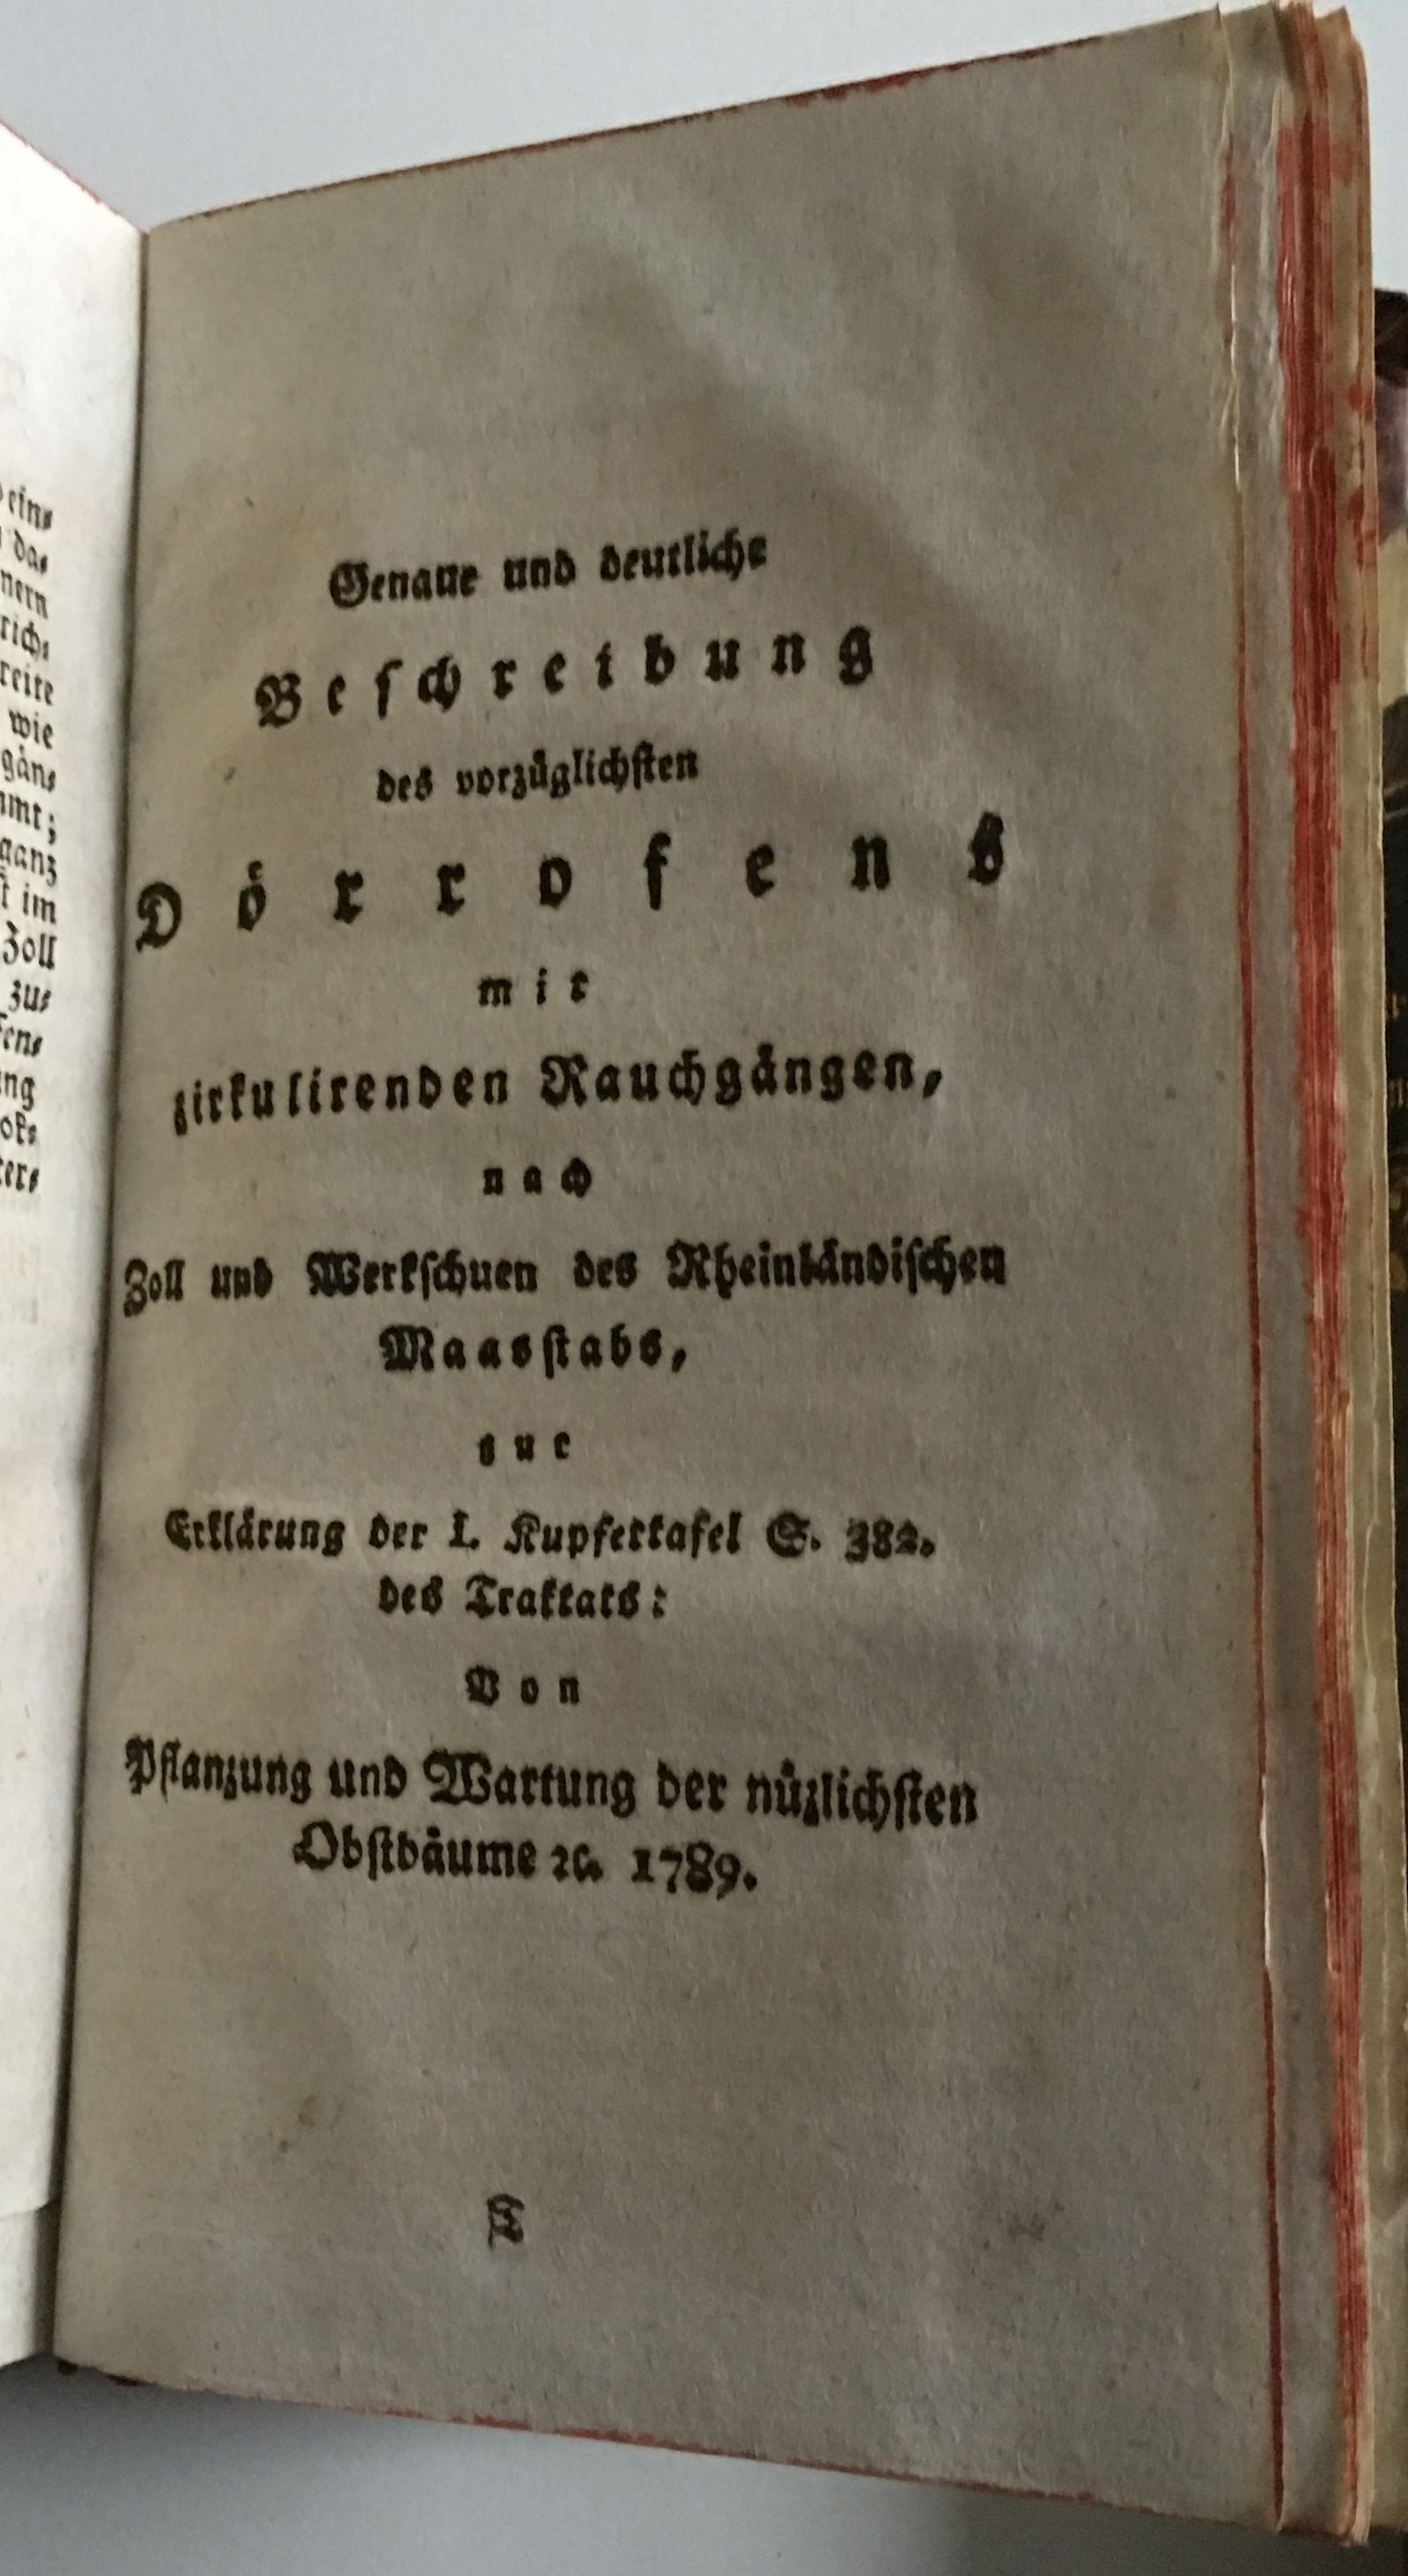 Johann Ludwig Christ, Genaue und deutliche Beschreibung des vorzüglichsten Dörrofens, 1790. (Taunus-Rhein-Main - Regionalgeschichtliche Sammlung Dr. Stefan Naas CC BY-NC-SA)